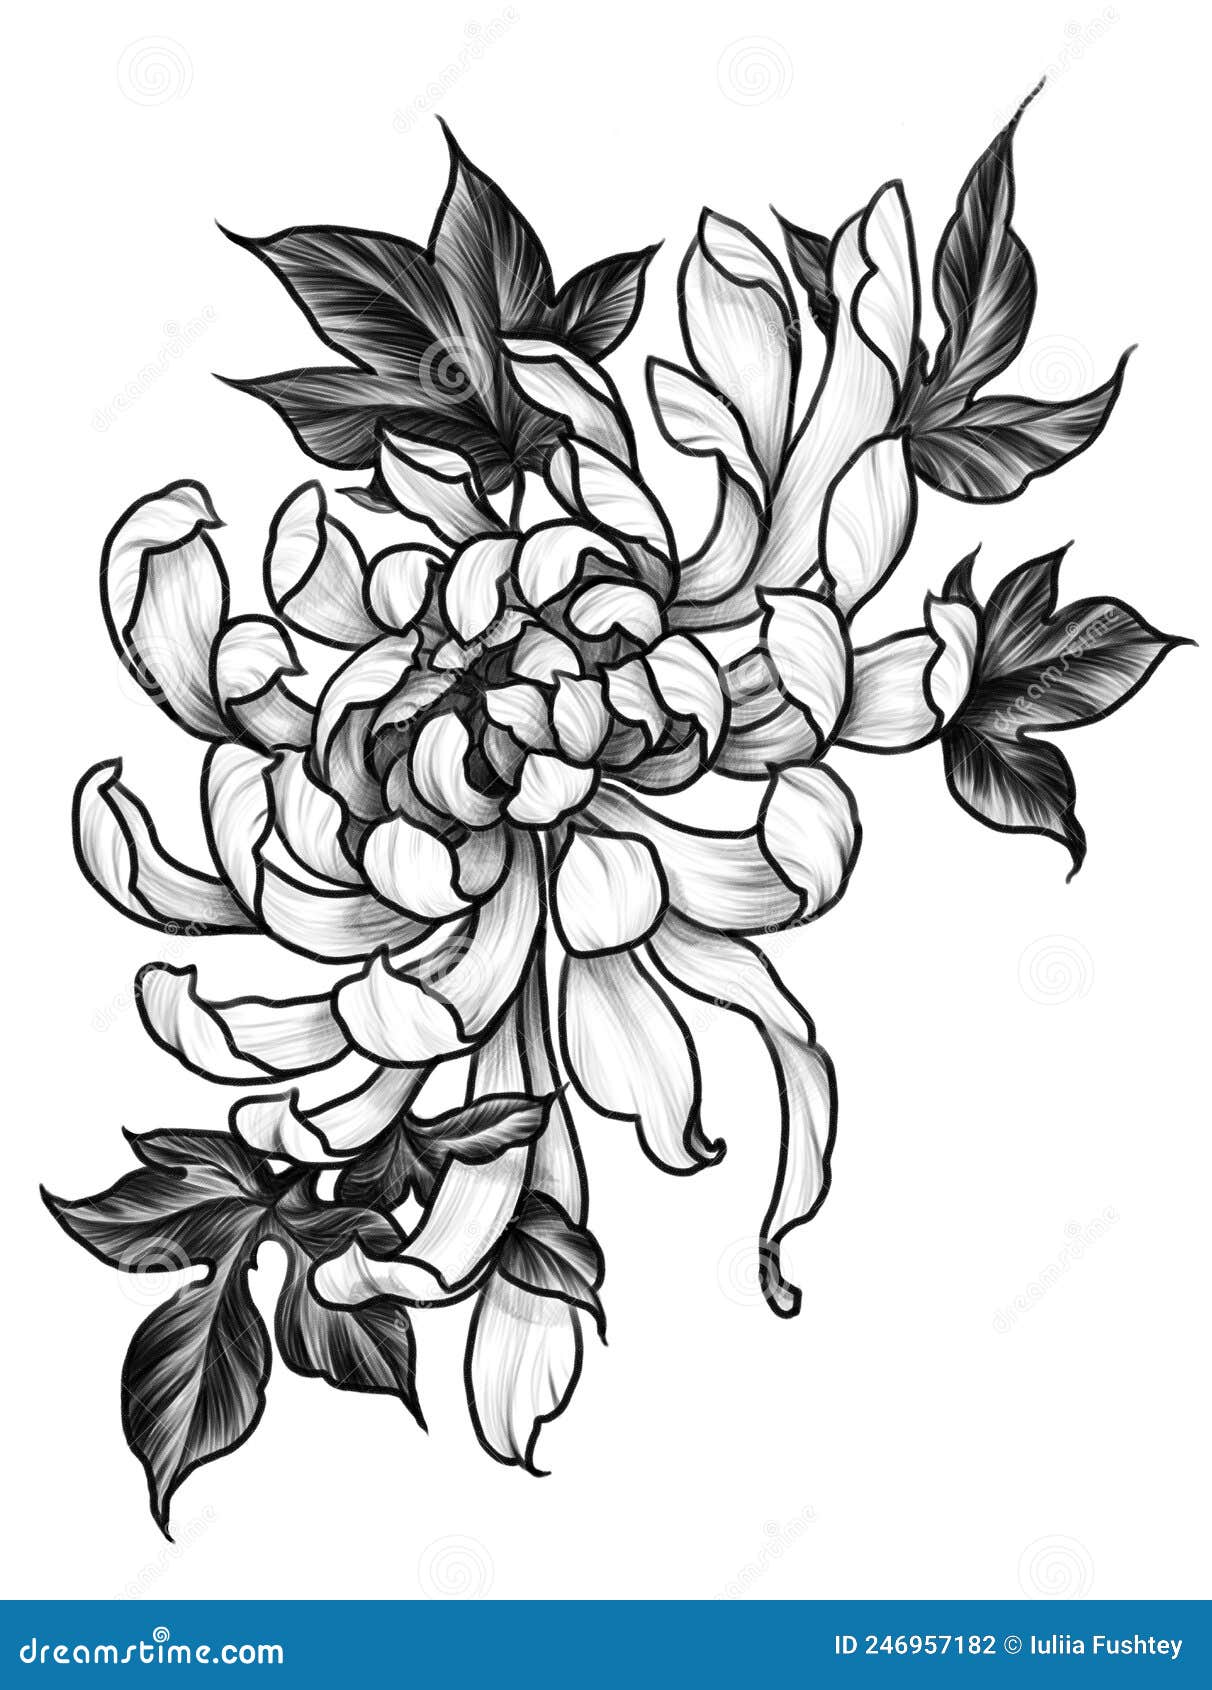 Traditional Japanese Tattoos  Chrysanthemum Kiku